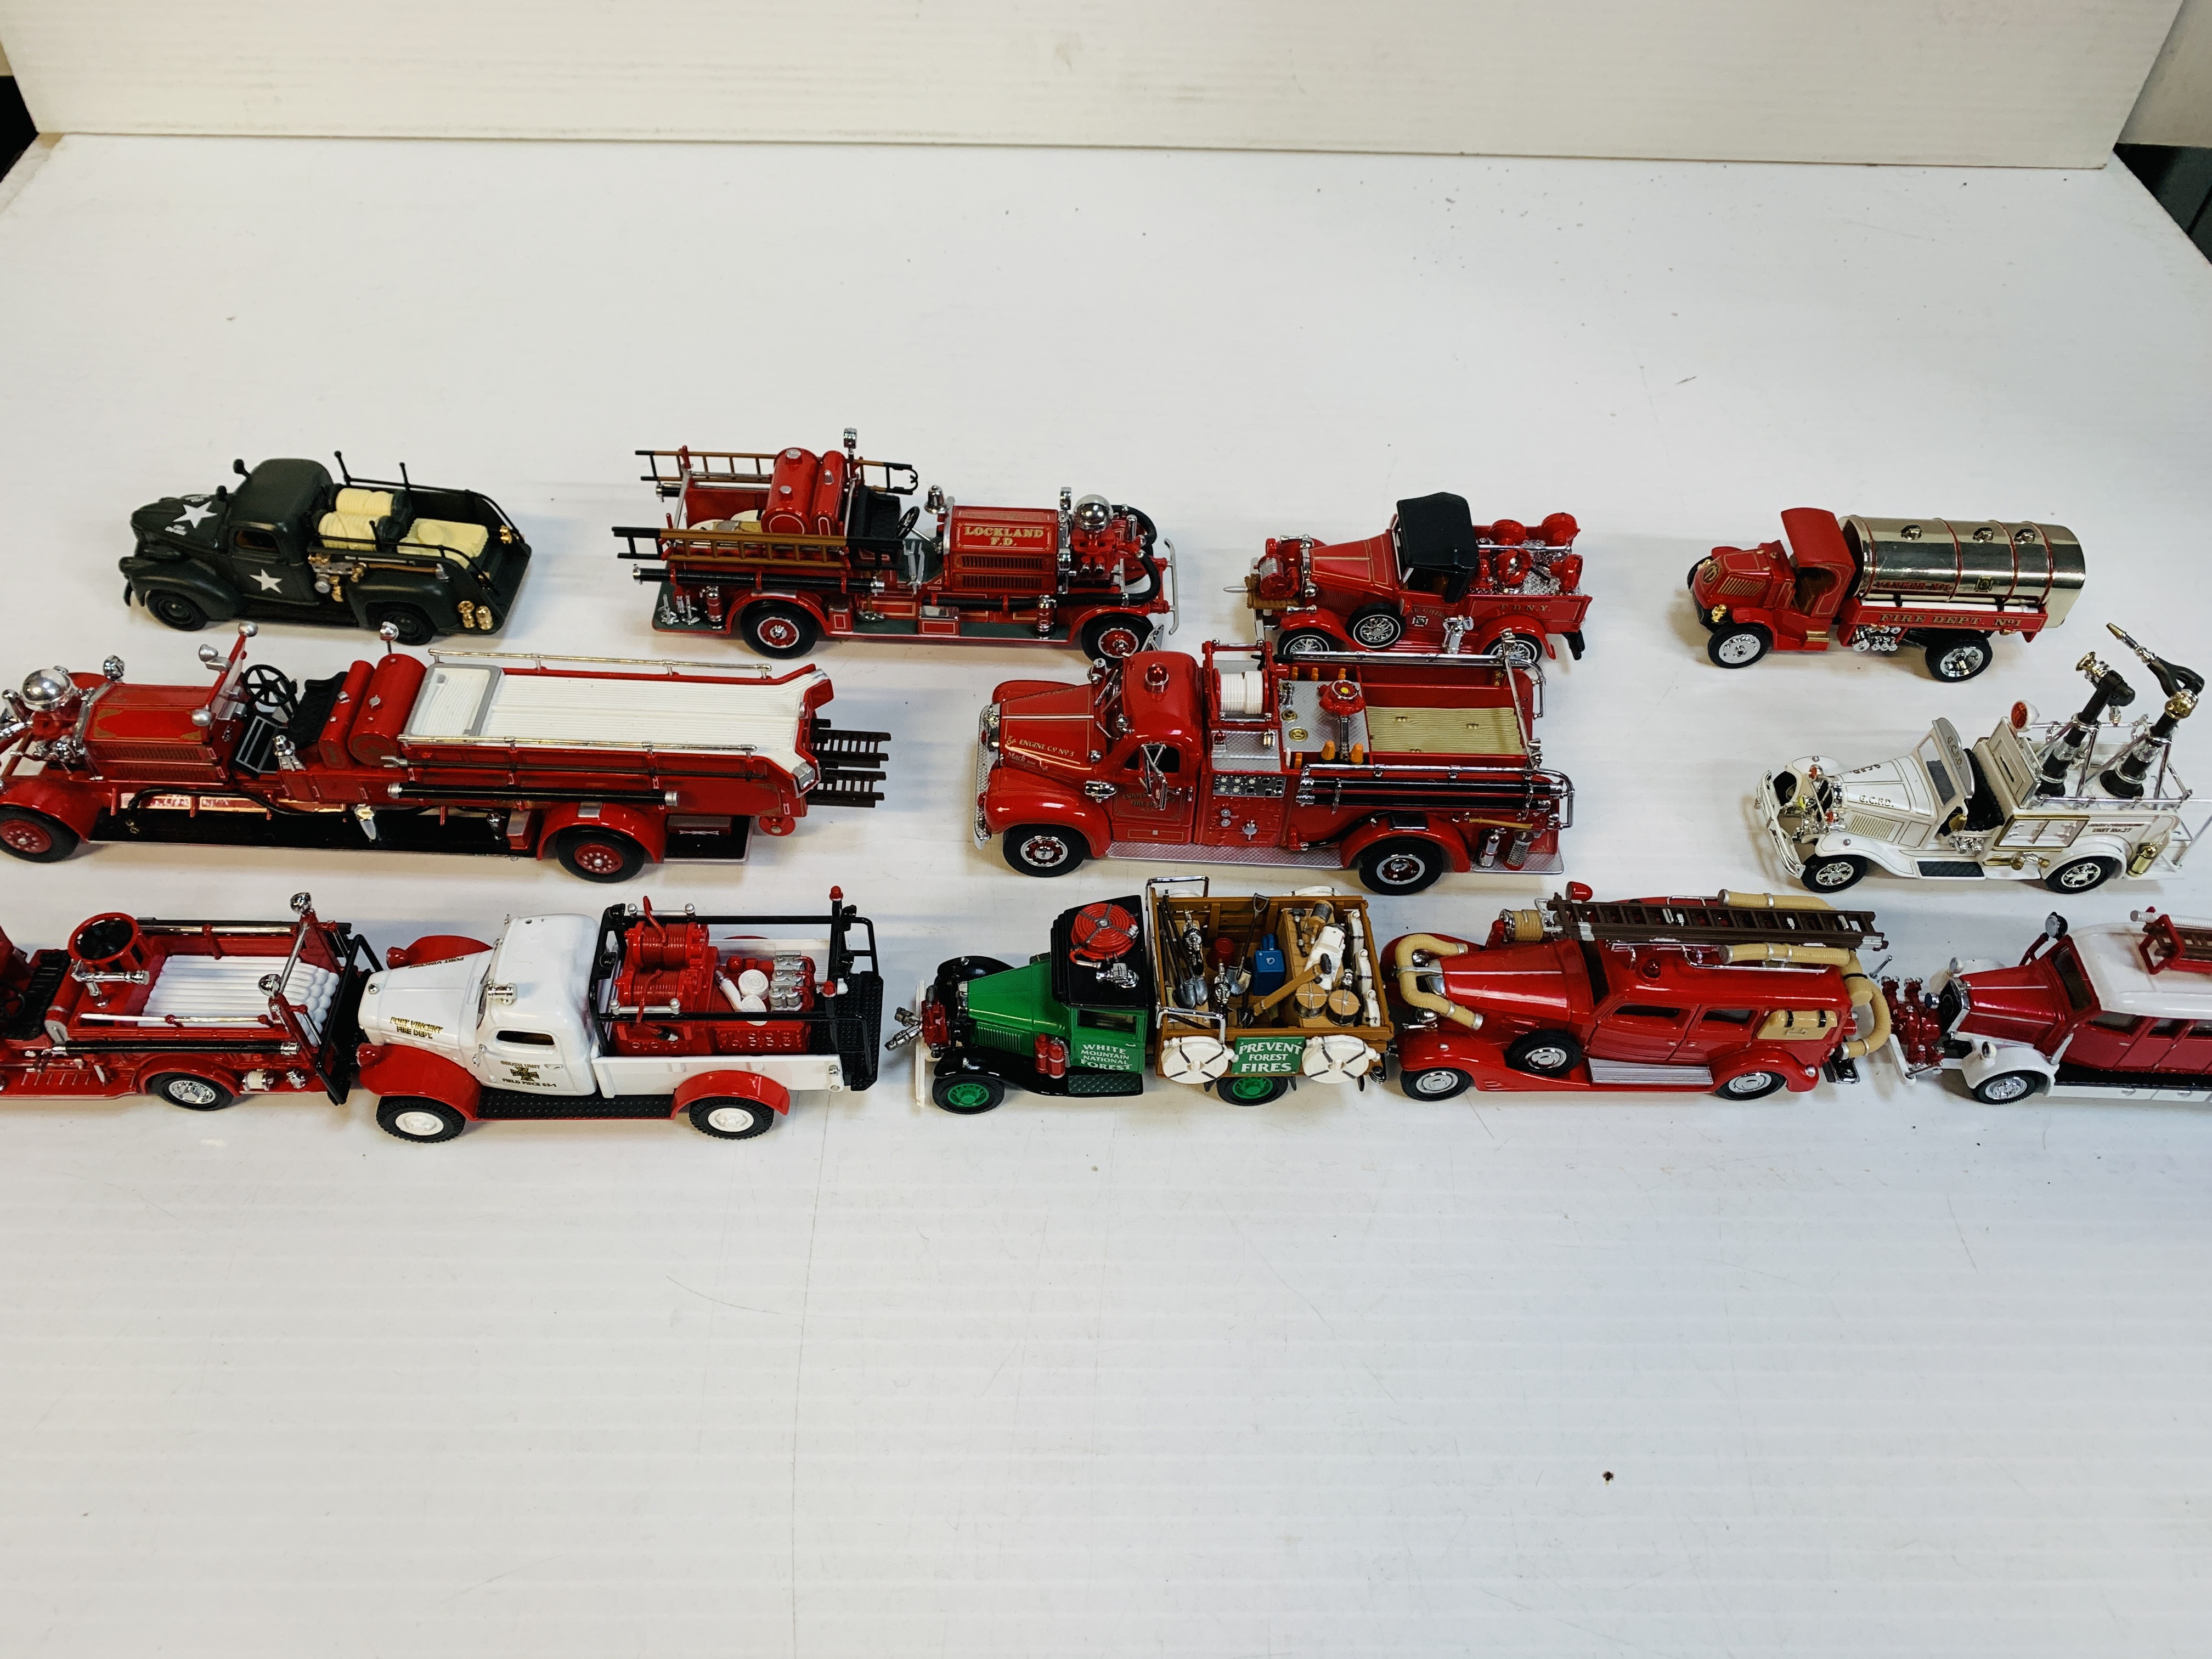 Twelve assorted fire fighting vehicles.